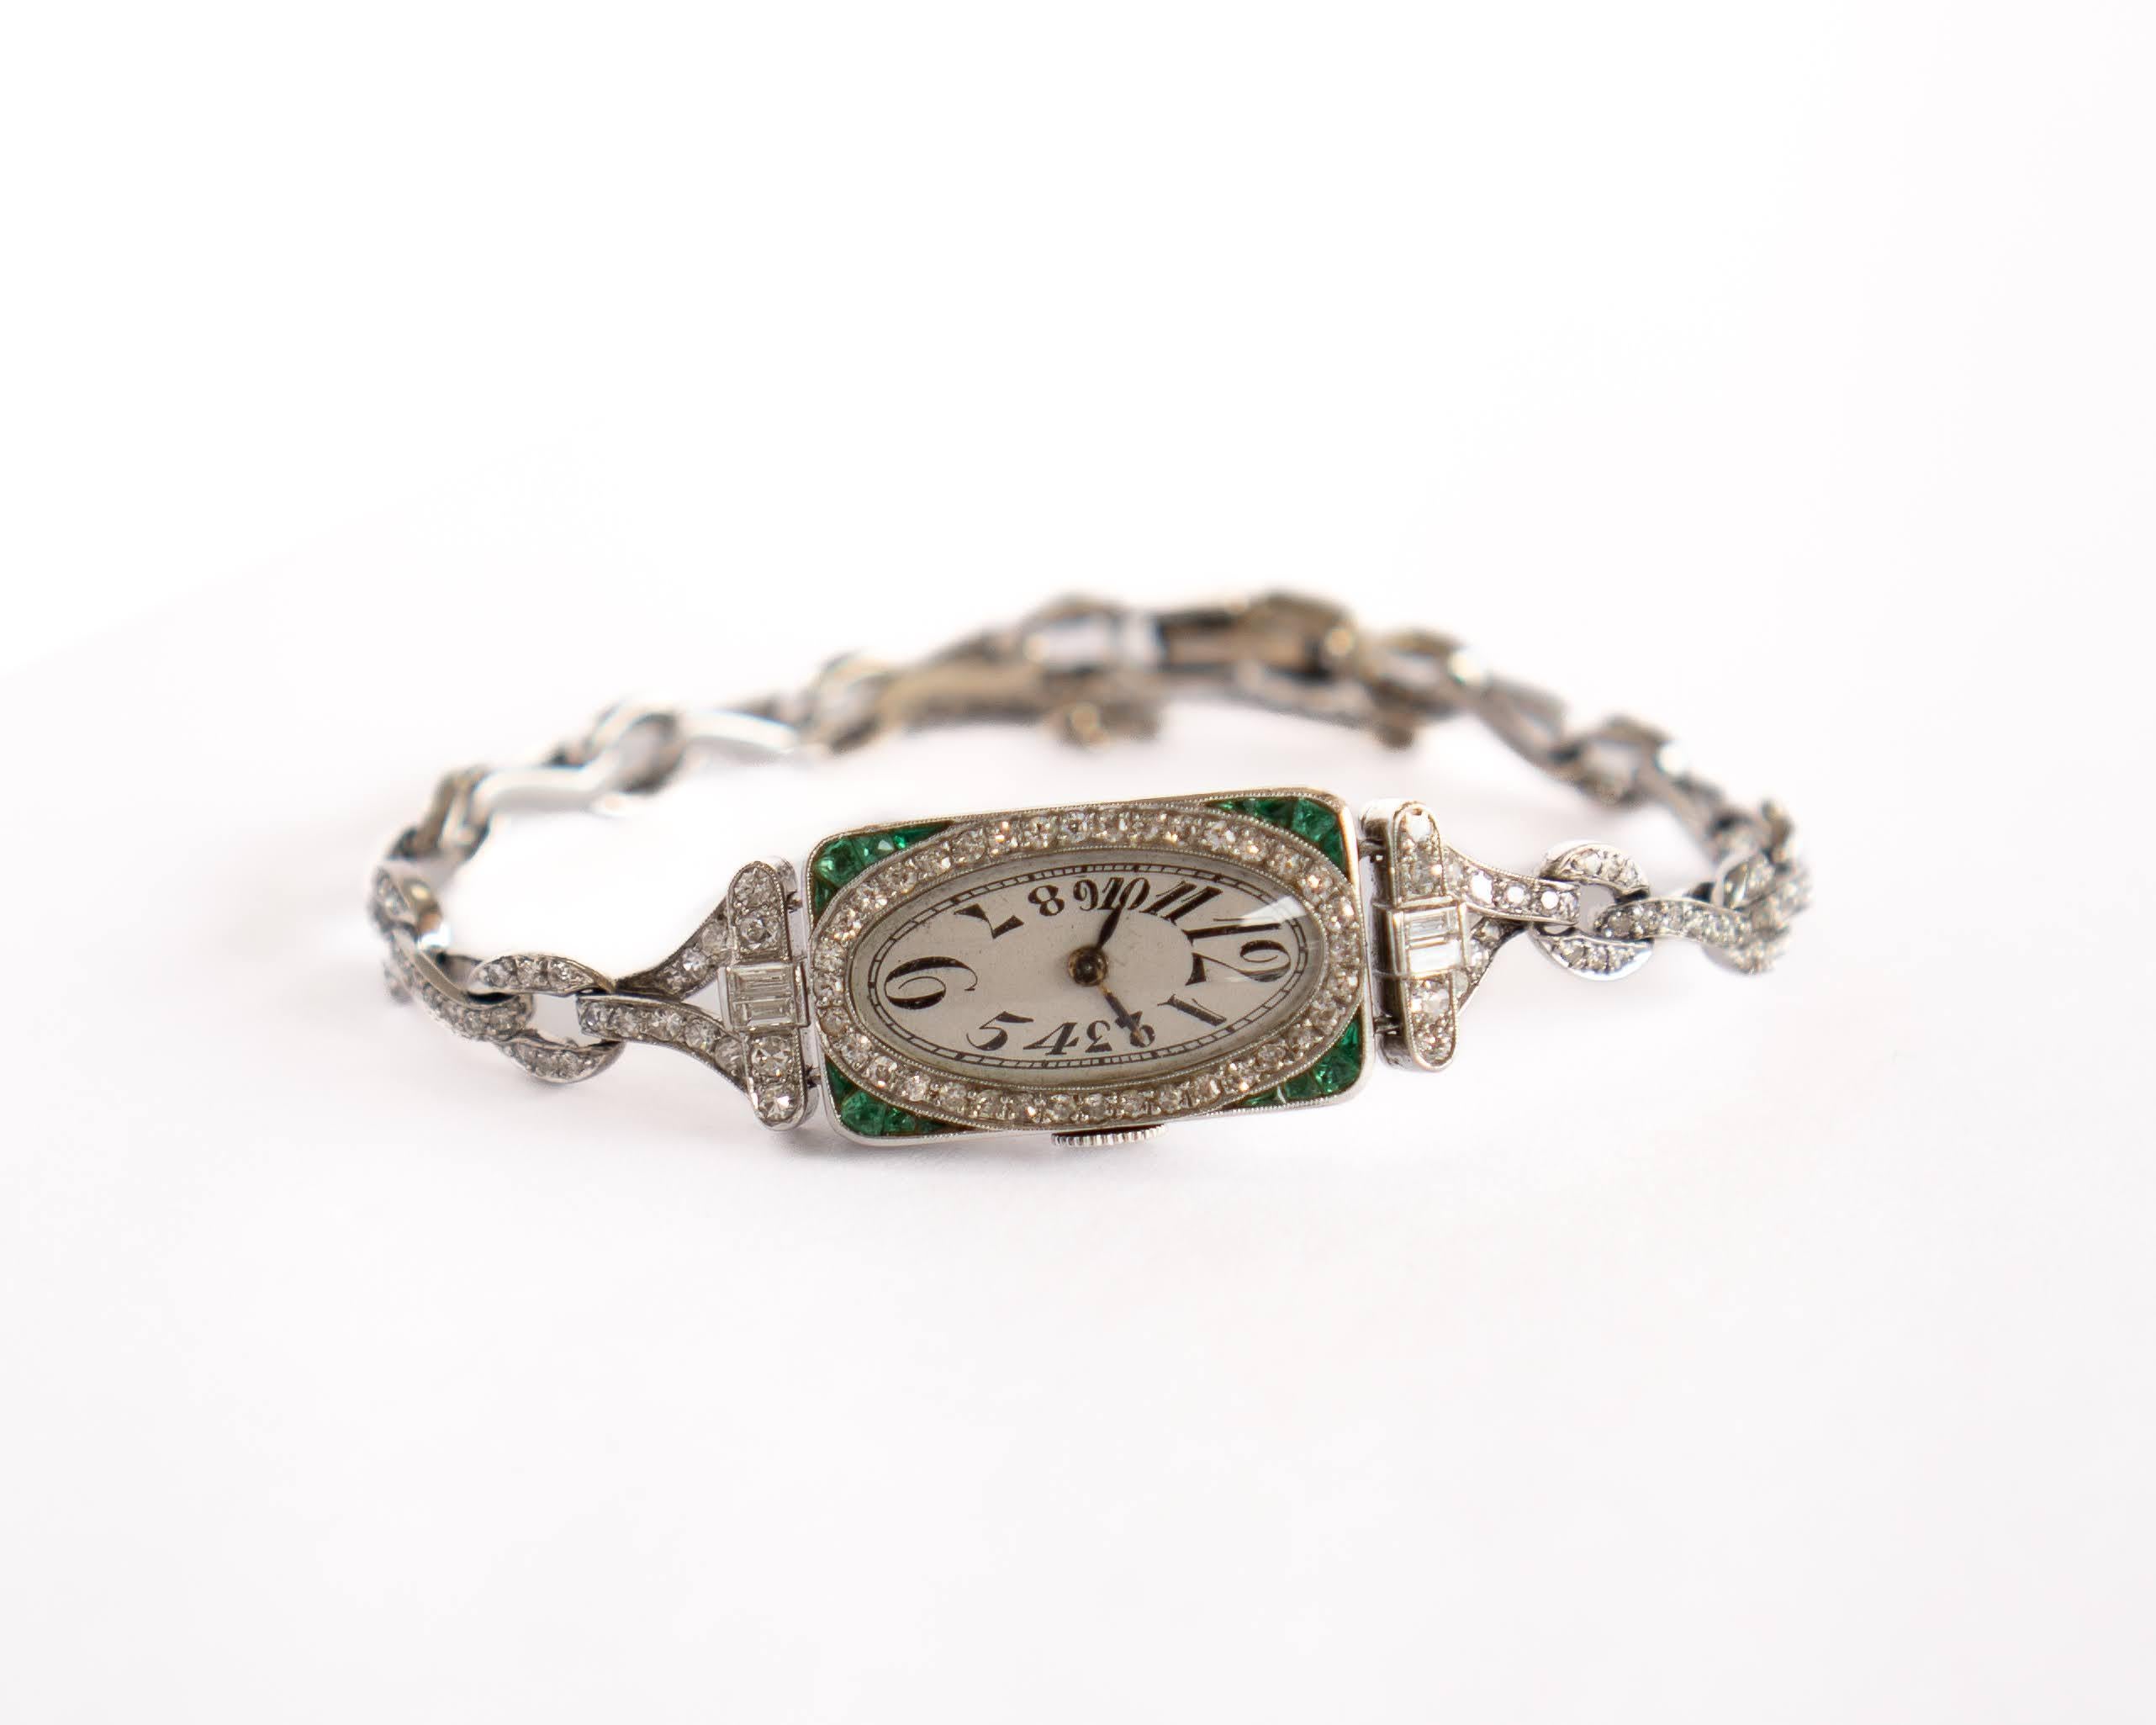 Diese Haas Neveux Lady's Vintage-Uhr aus Platin hat ein 14-karätiges Armband aus Weißgold mit einem diamantbesetzten Gehäuse aus Weißgold und natürlichen Smaragdecken. Dieses Stück verfügt über 197 runde Lünettenfassungen, 4 rechteckige